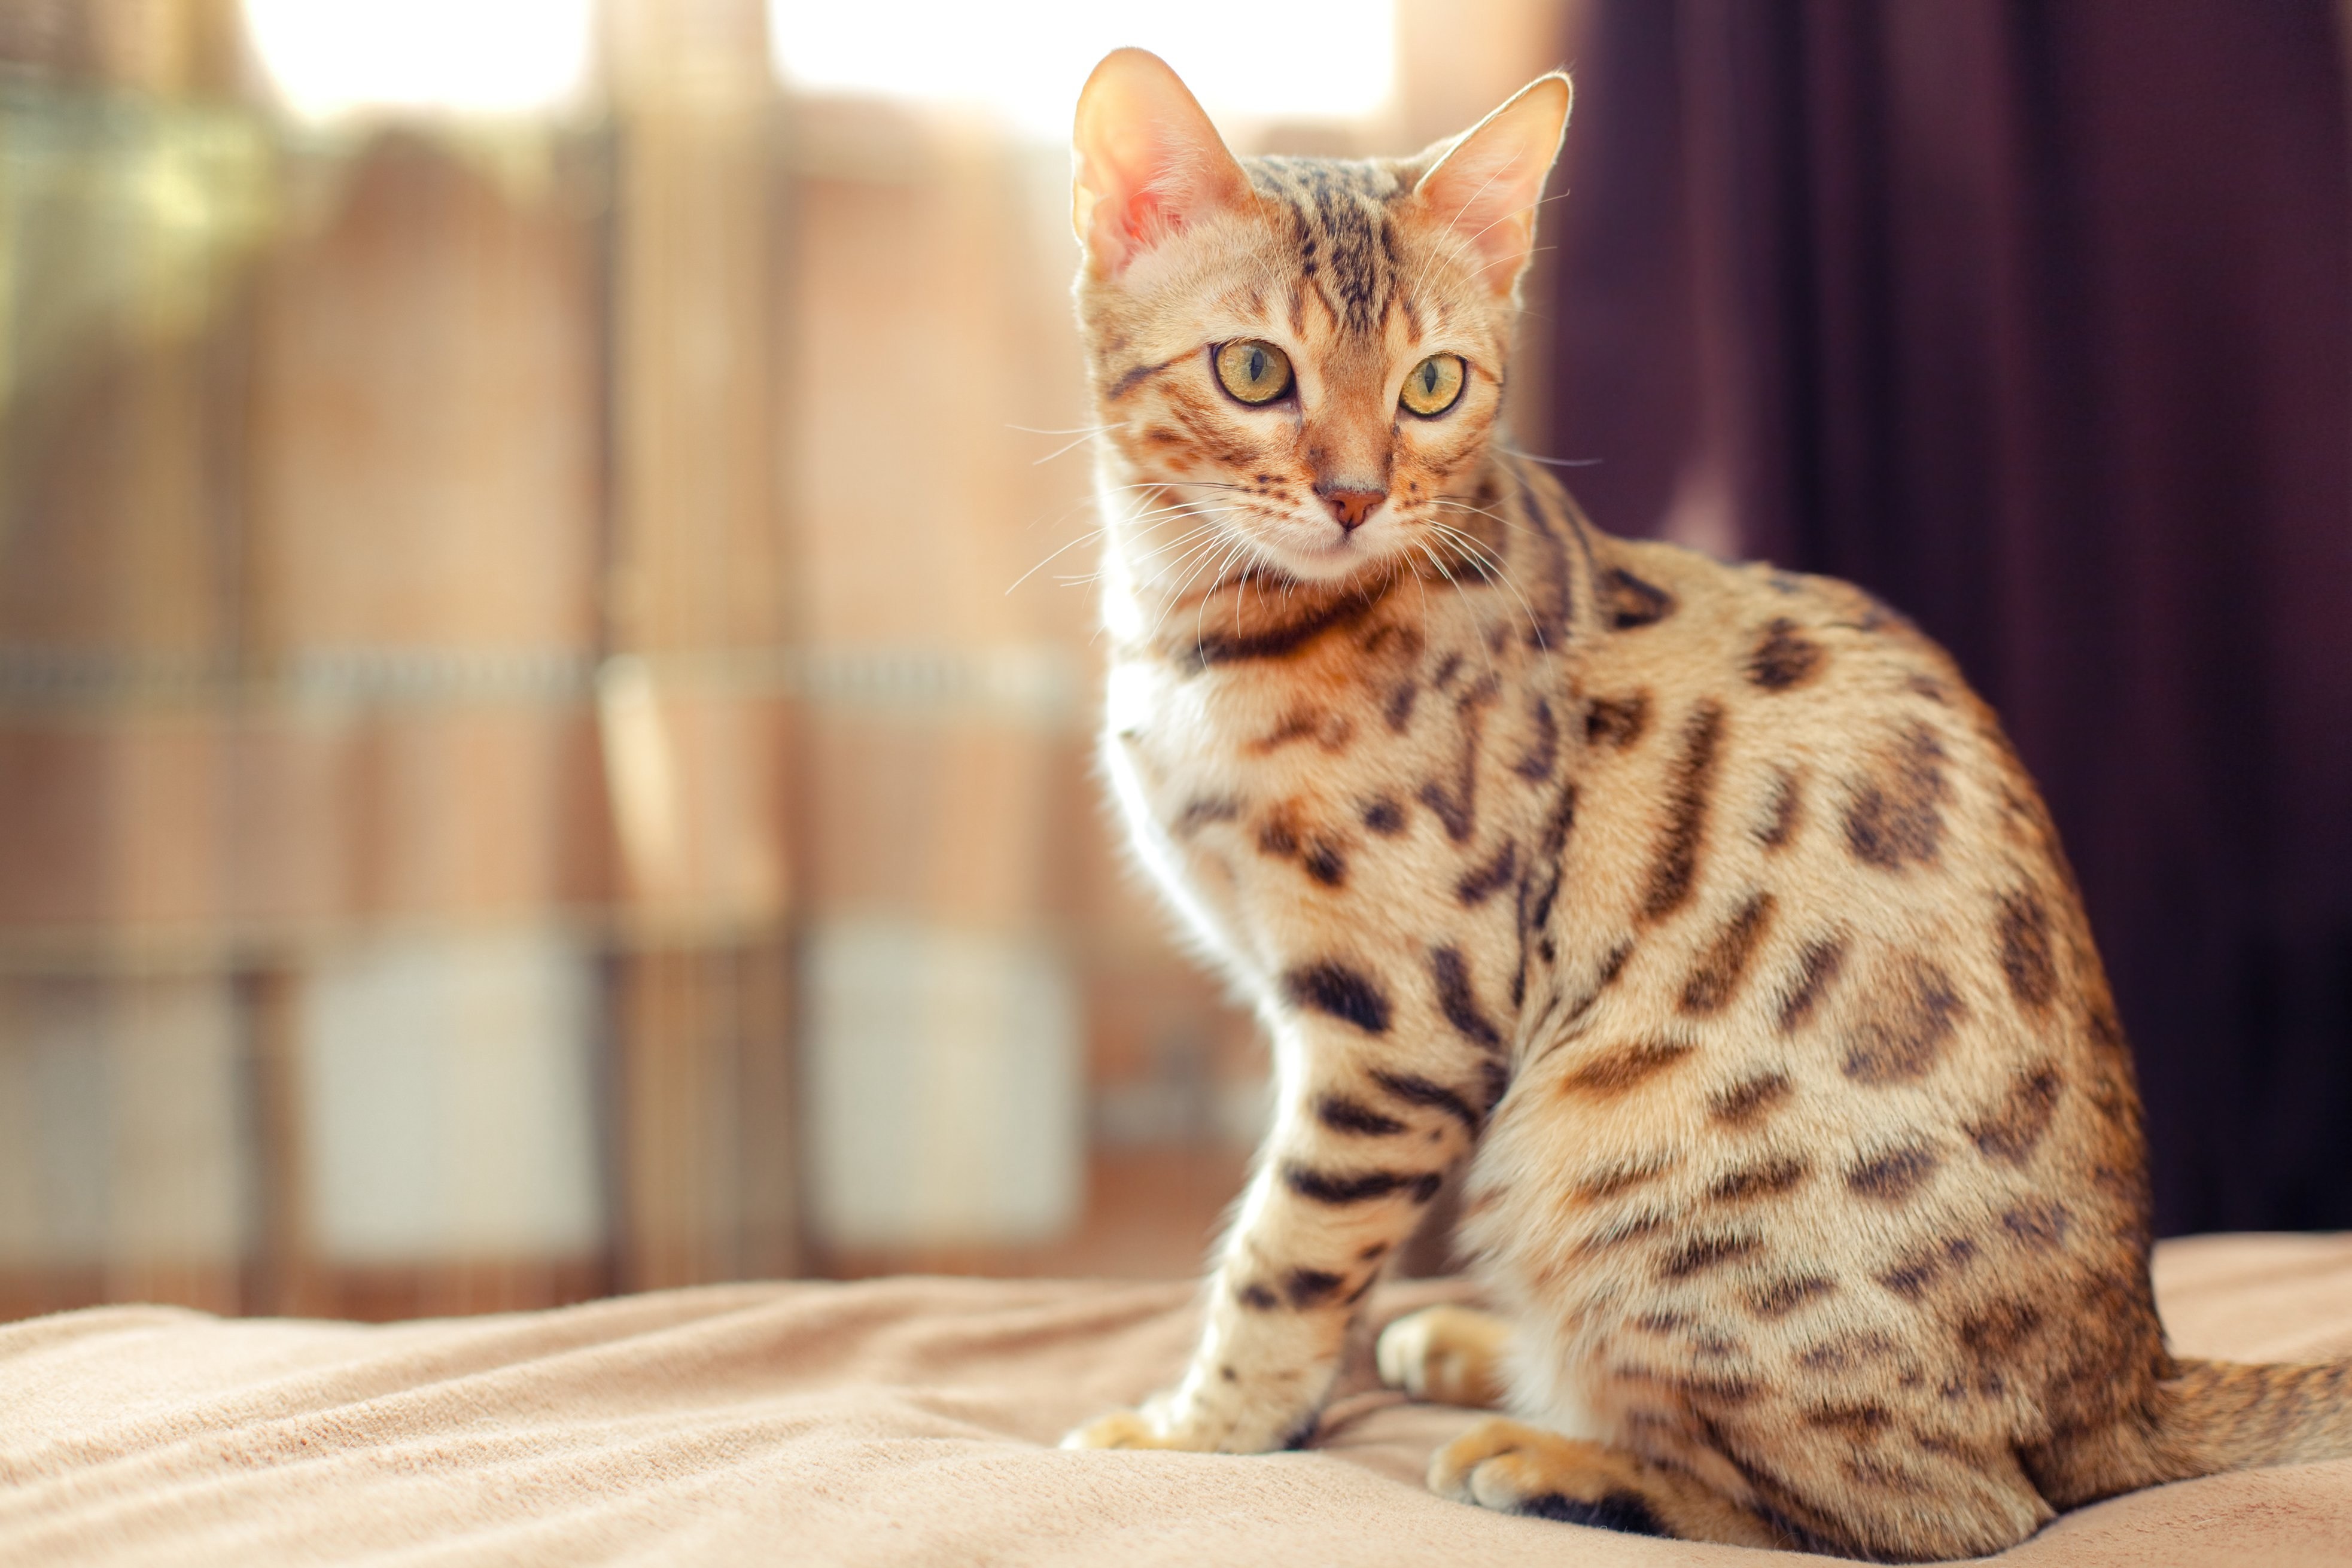 Рассмотрите фотографию пятнистой кошки породы бенгальская